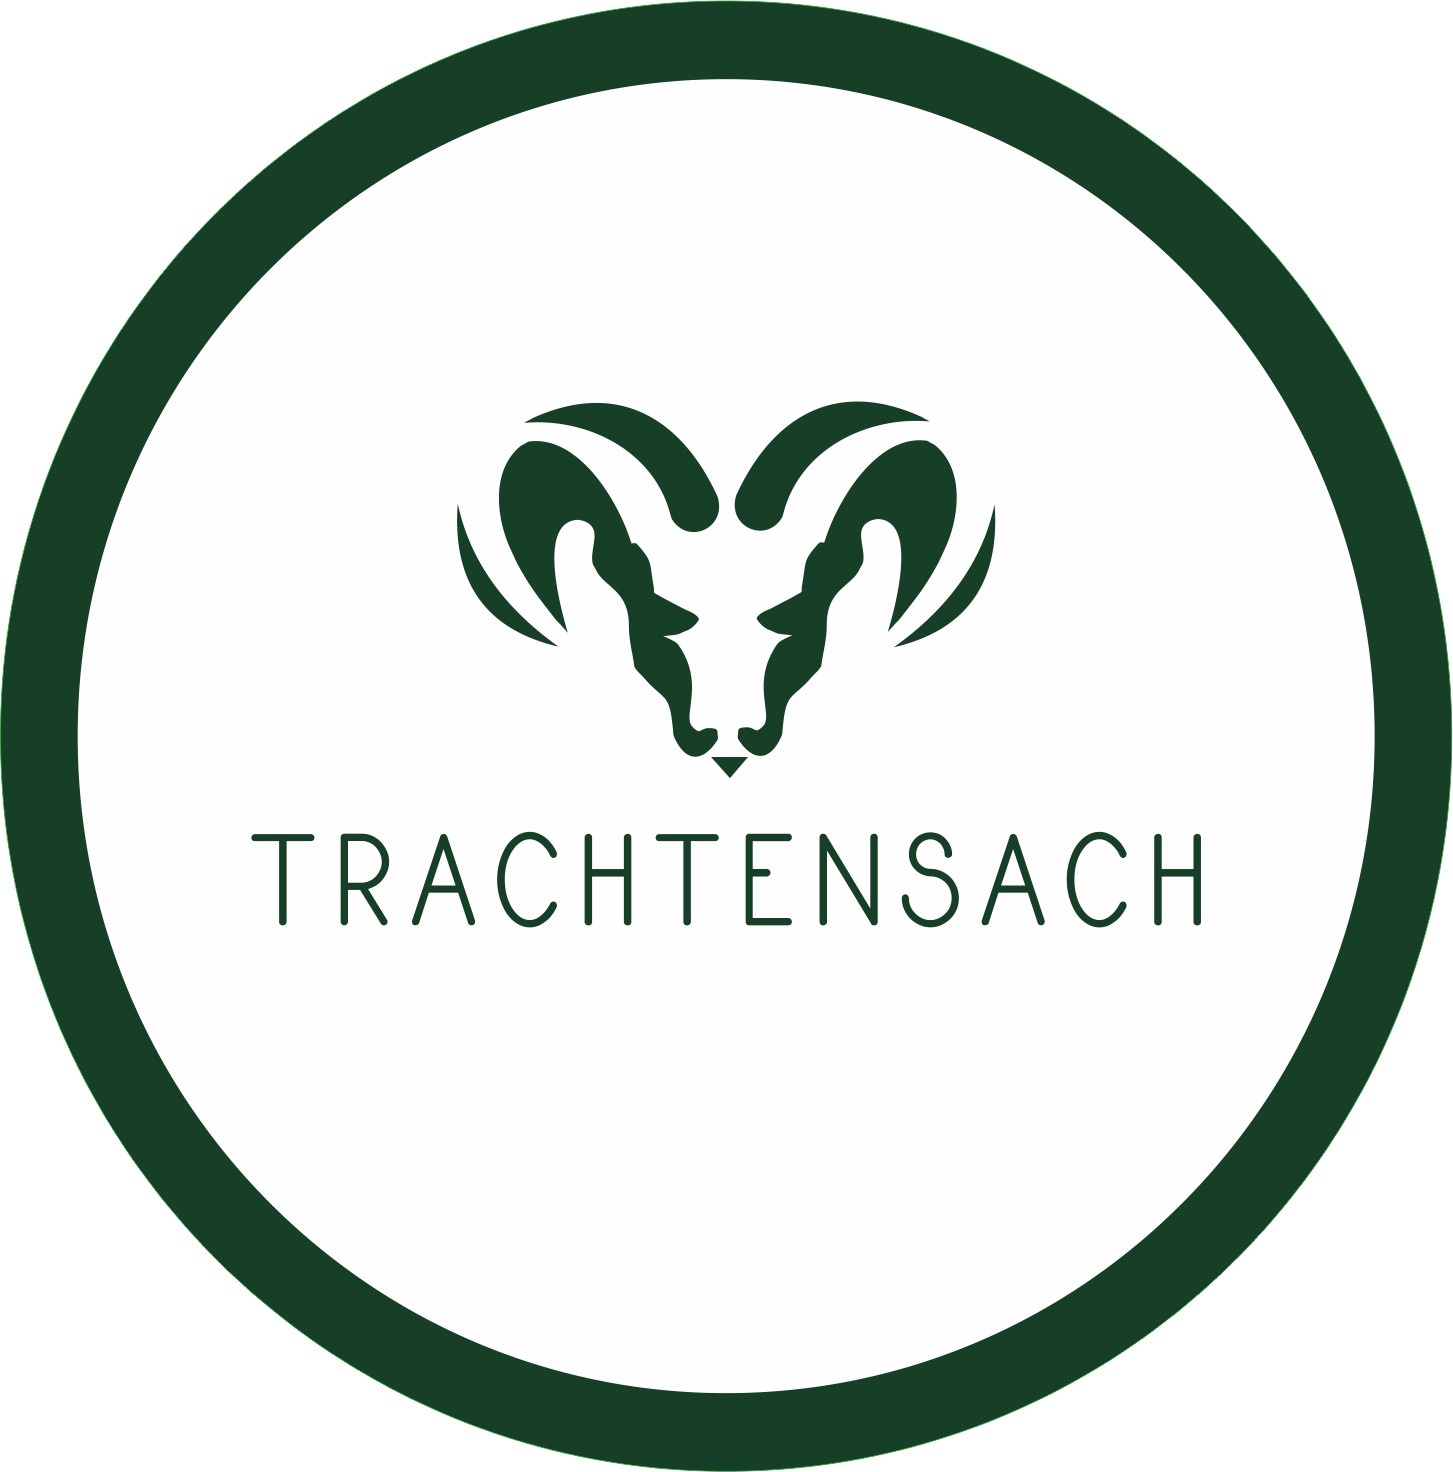 Trachtensach by Delicatum GmbH